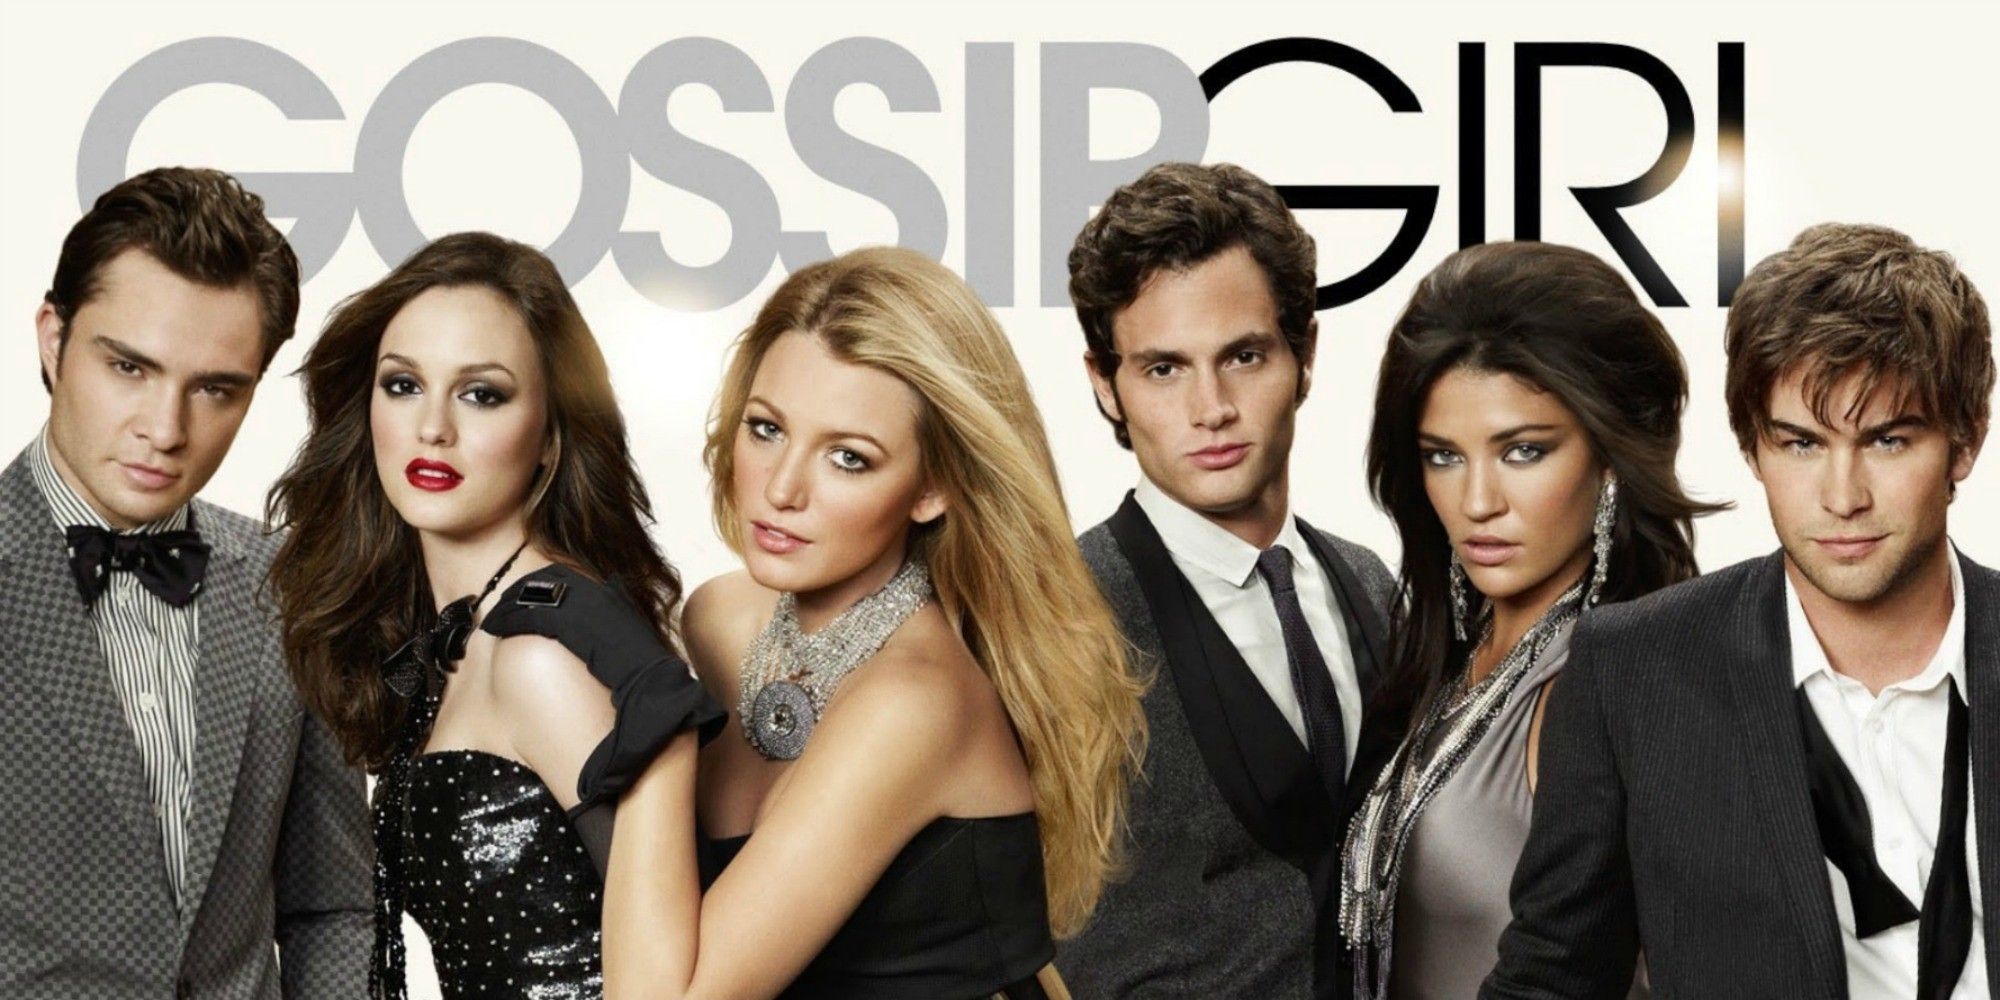 The Gossip Girl Reboot Has Been Confirmed For UK Release